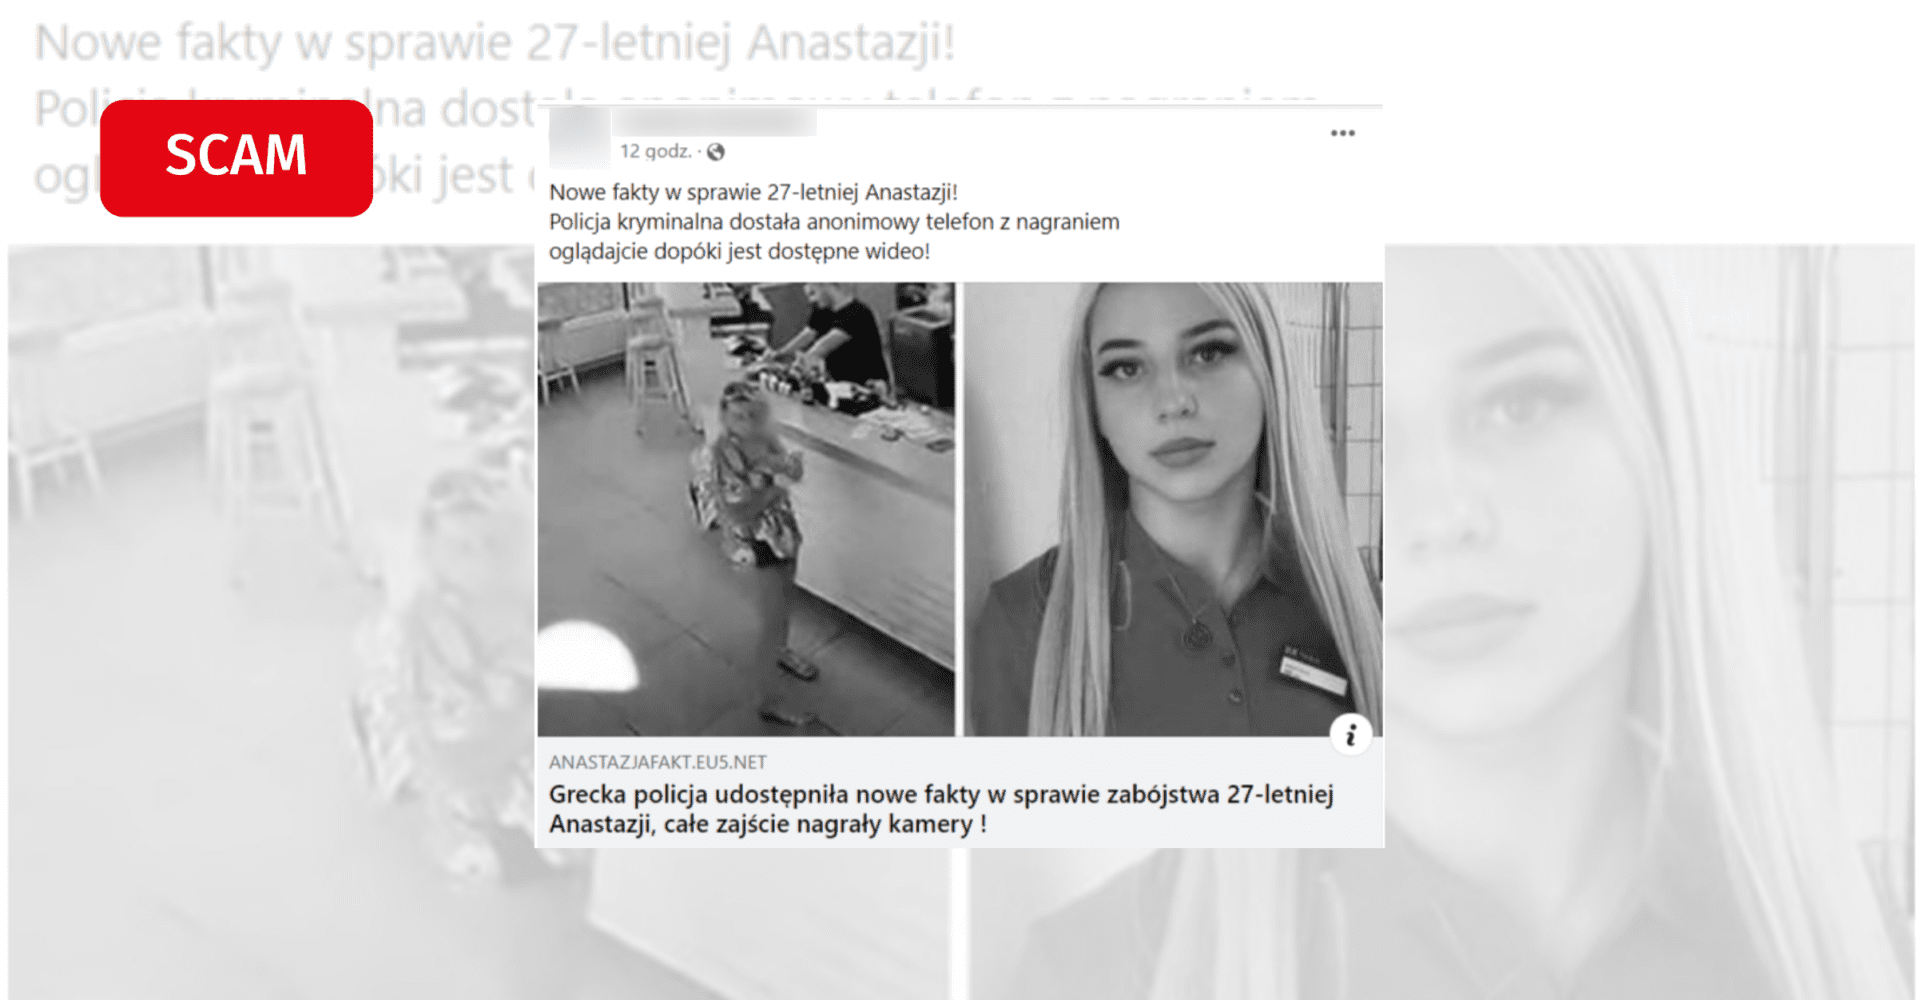 Nowe fakty o 27-letniej Anastazji? Uwaga, internetowe oszustwo!